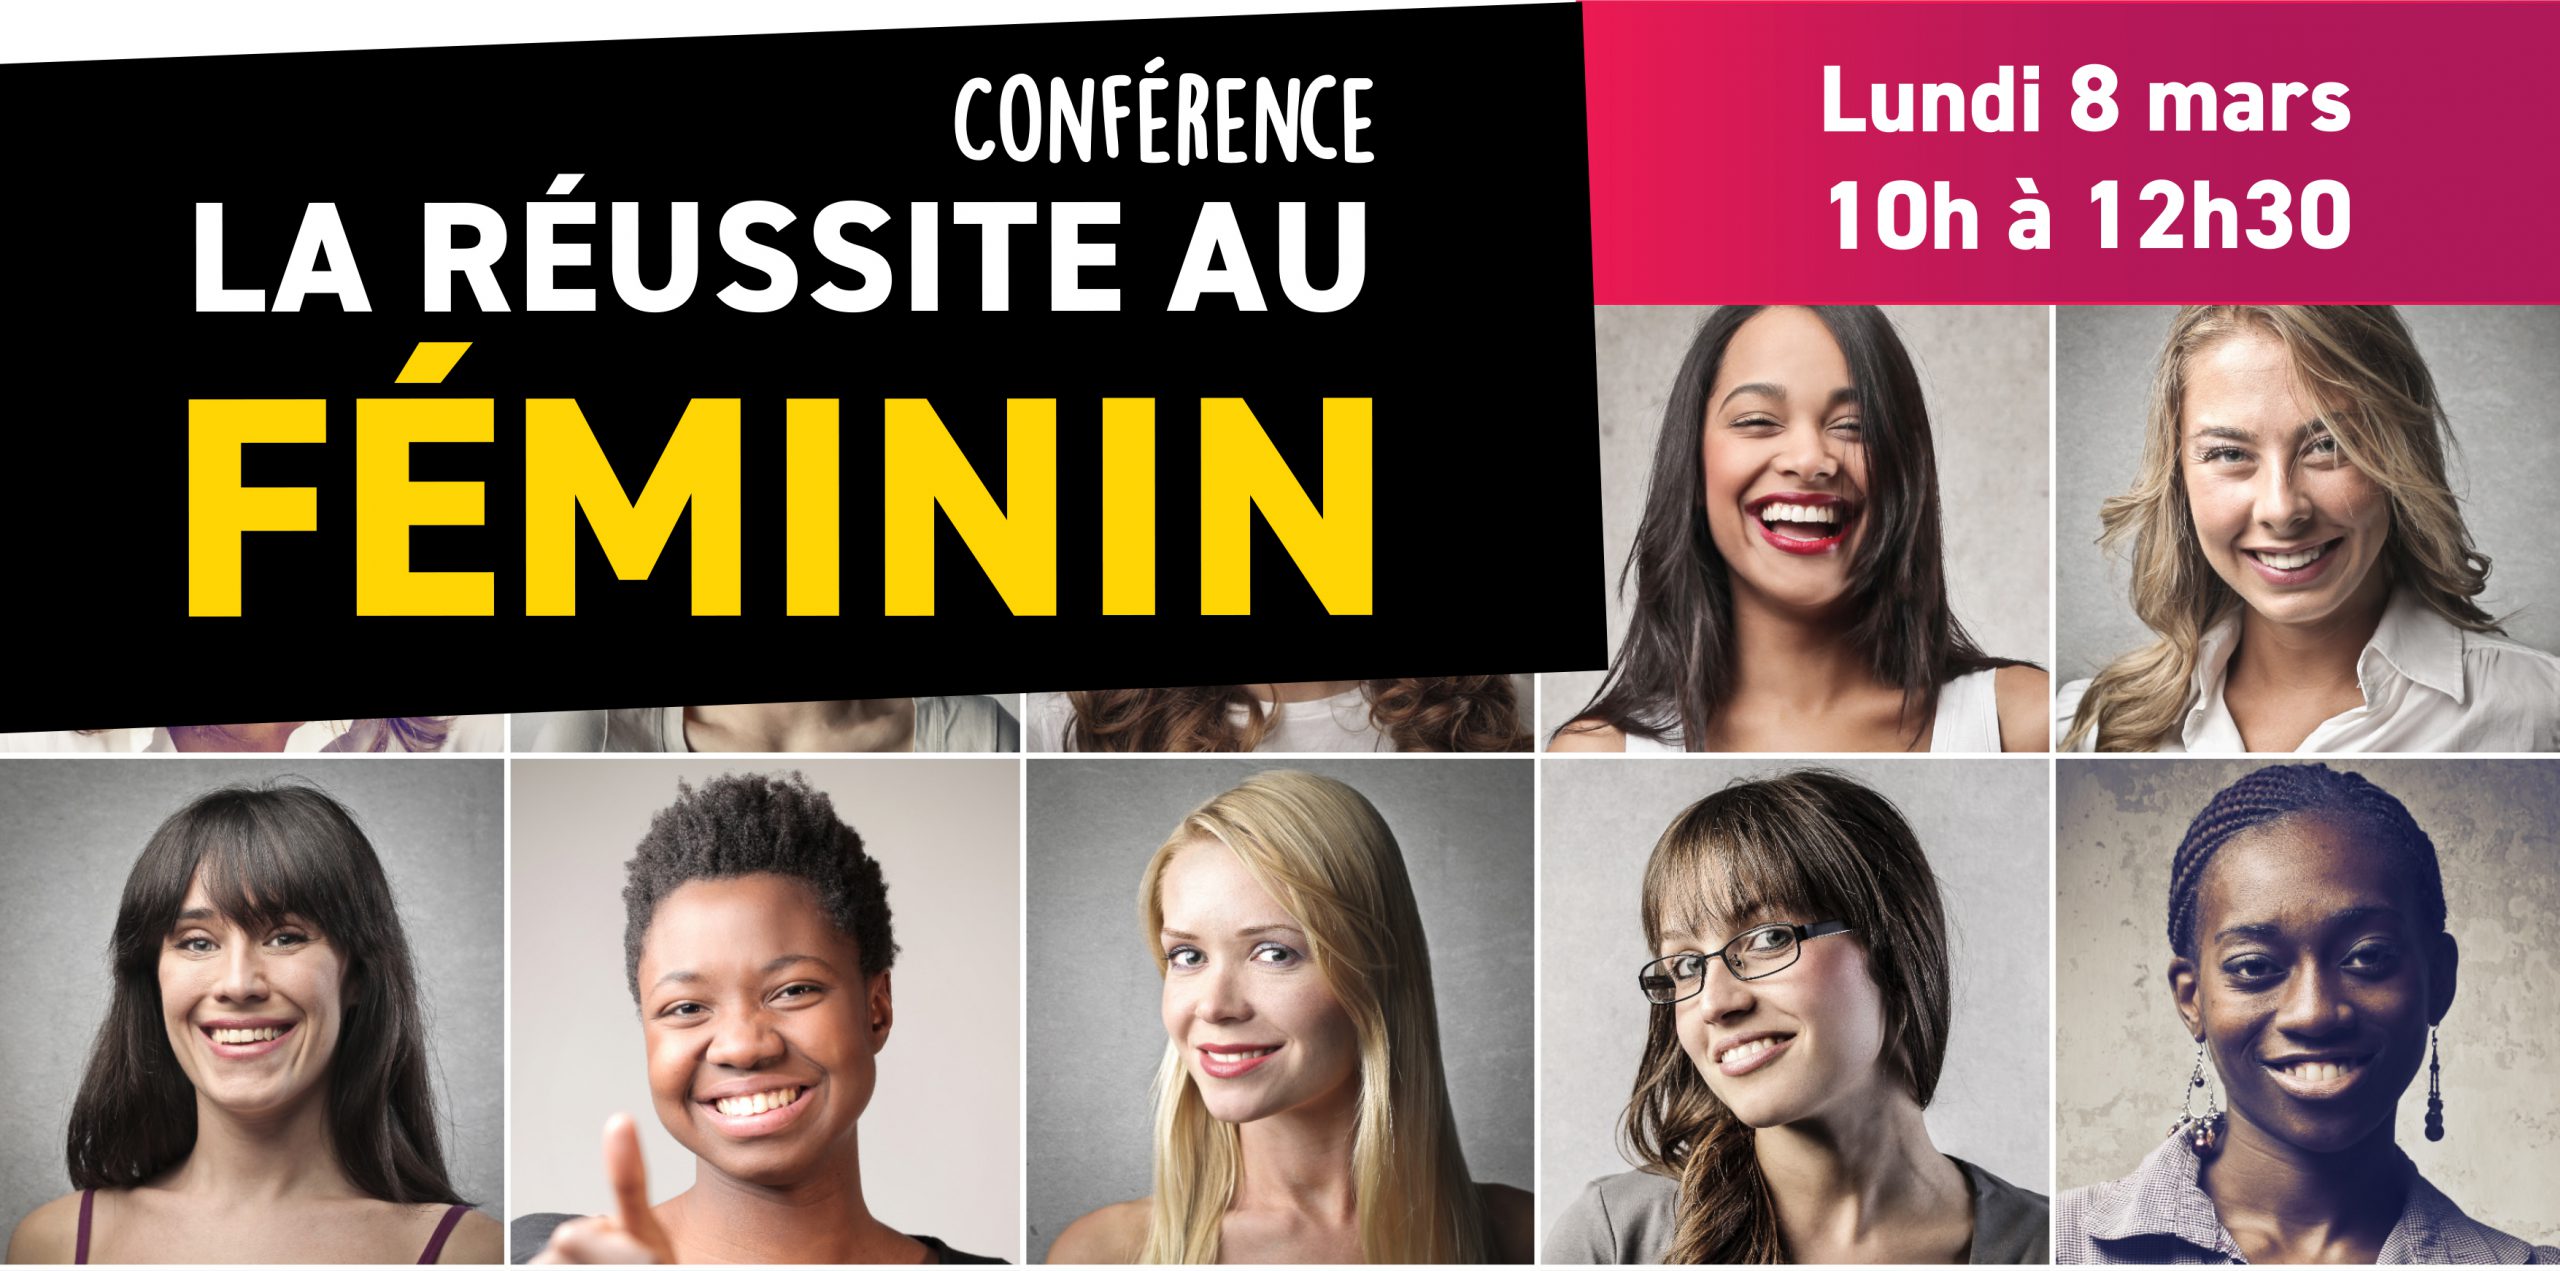 Conférence “La réussite au féminin” lundi 8 mars